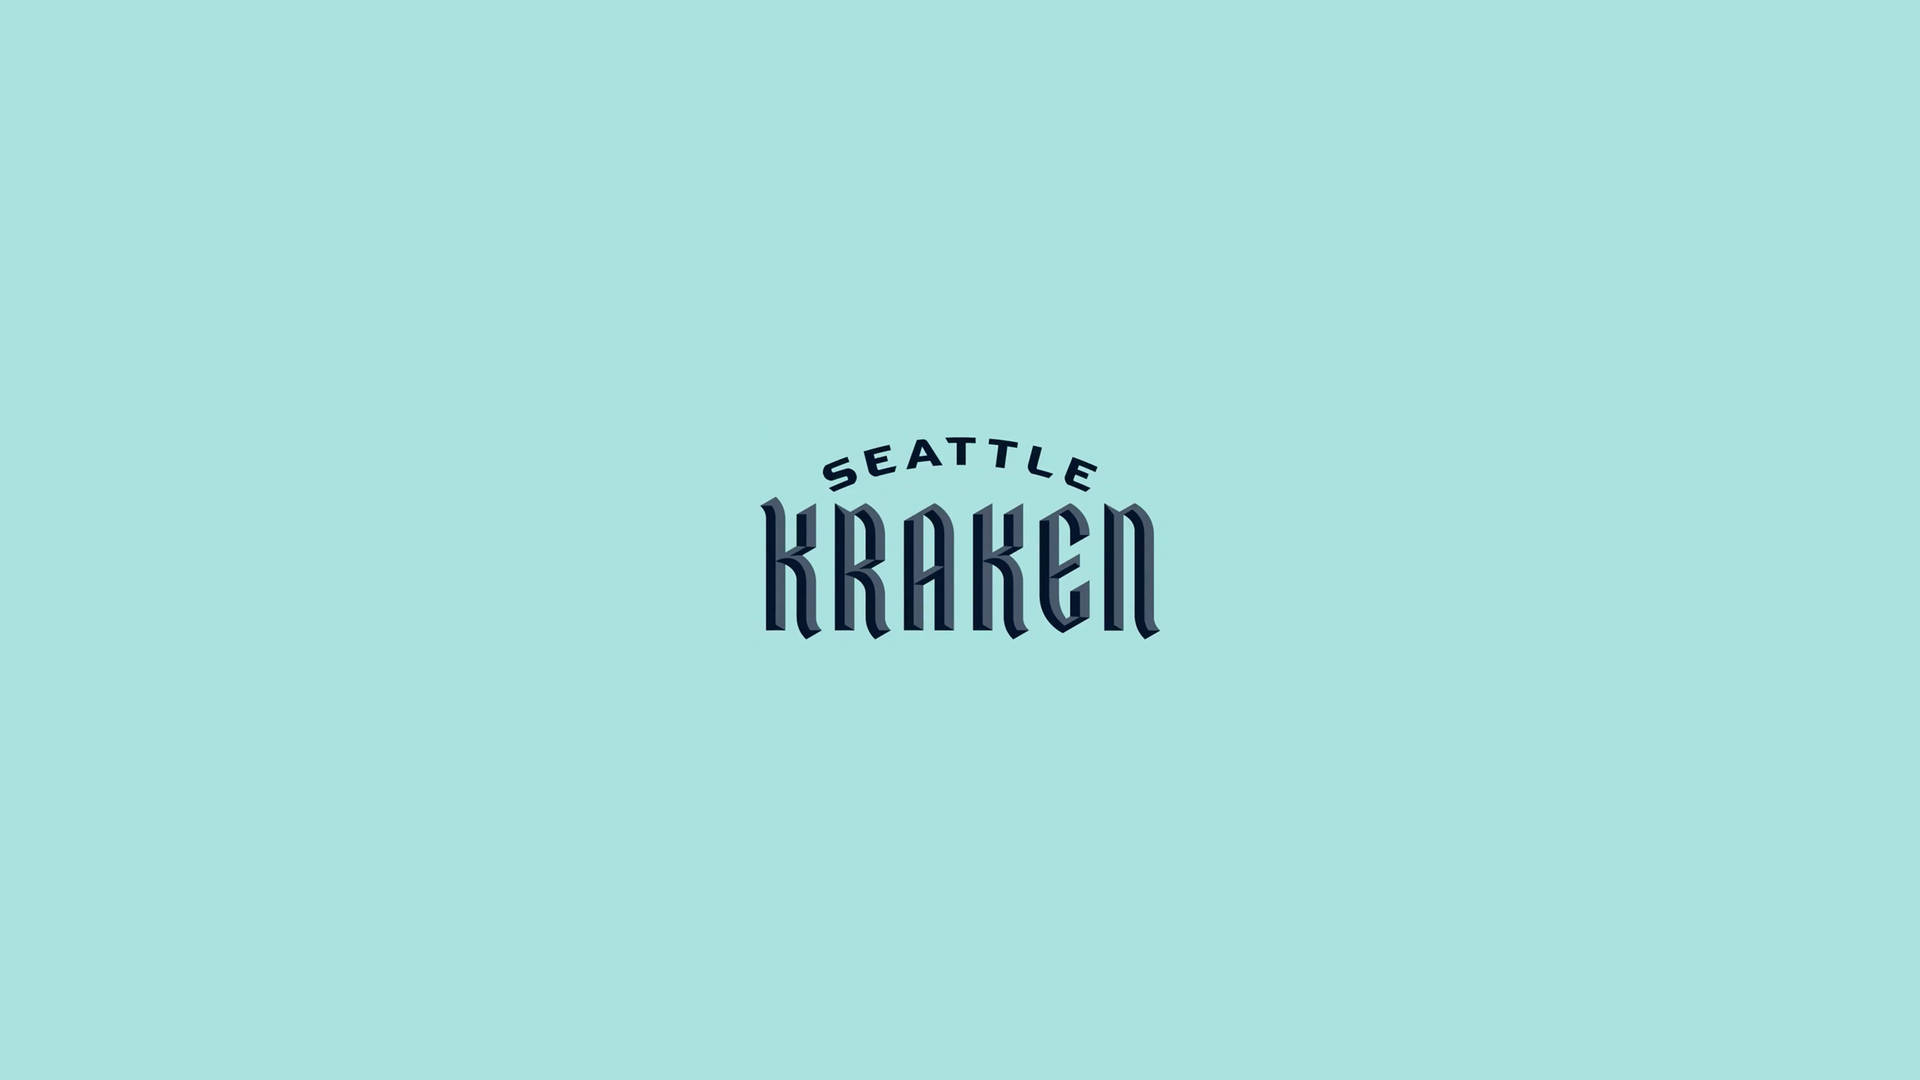 Seattle Kraken Wordmark Lettering Wallpaper